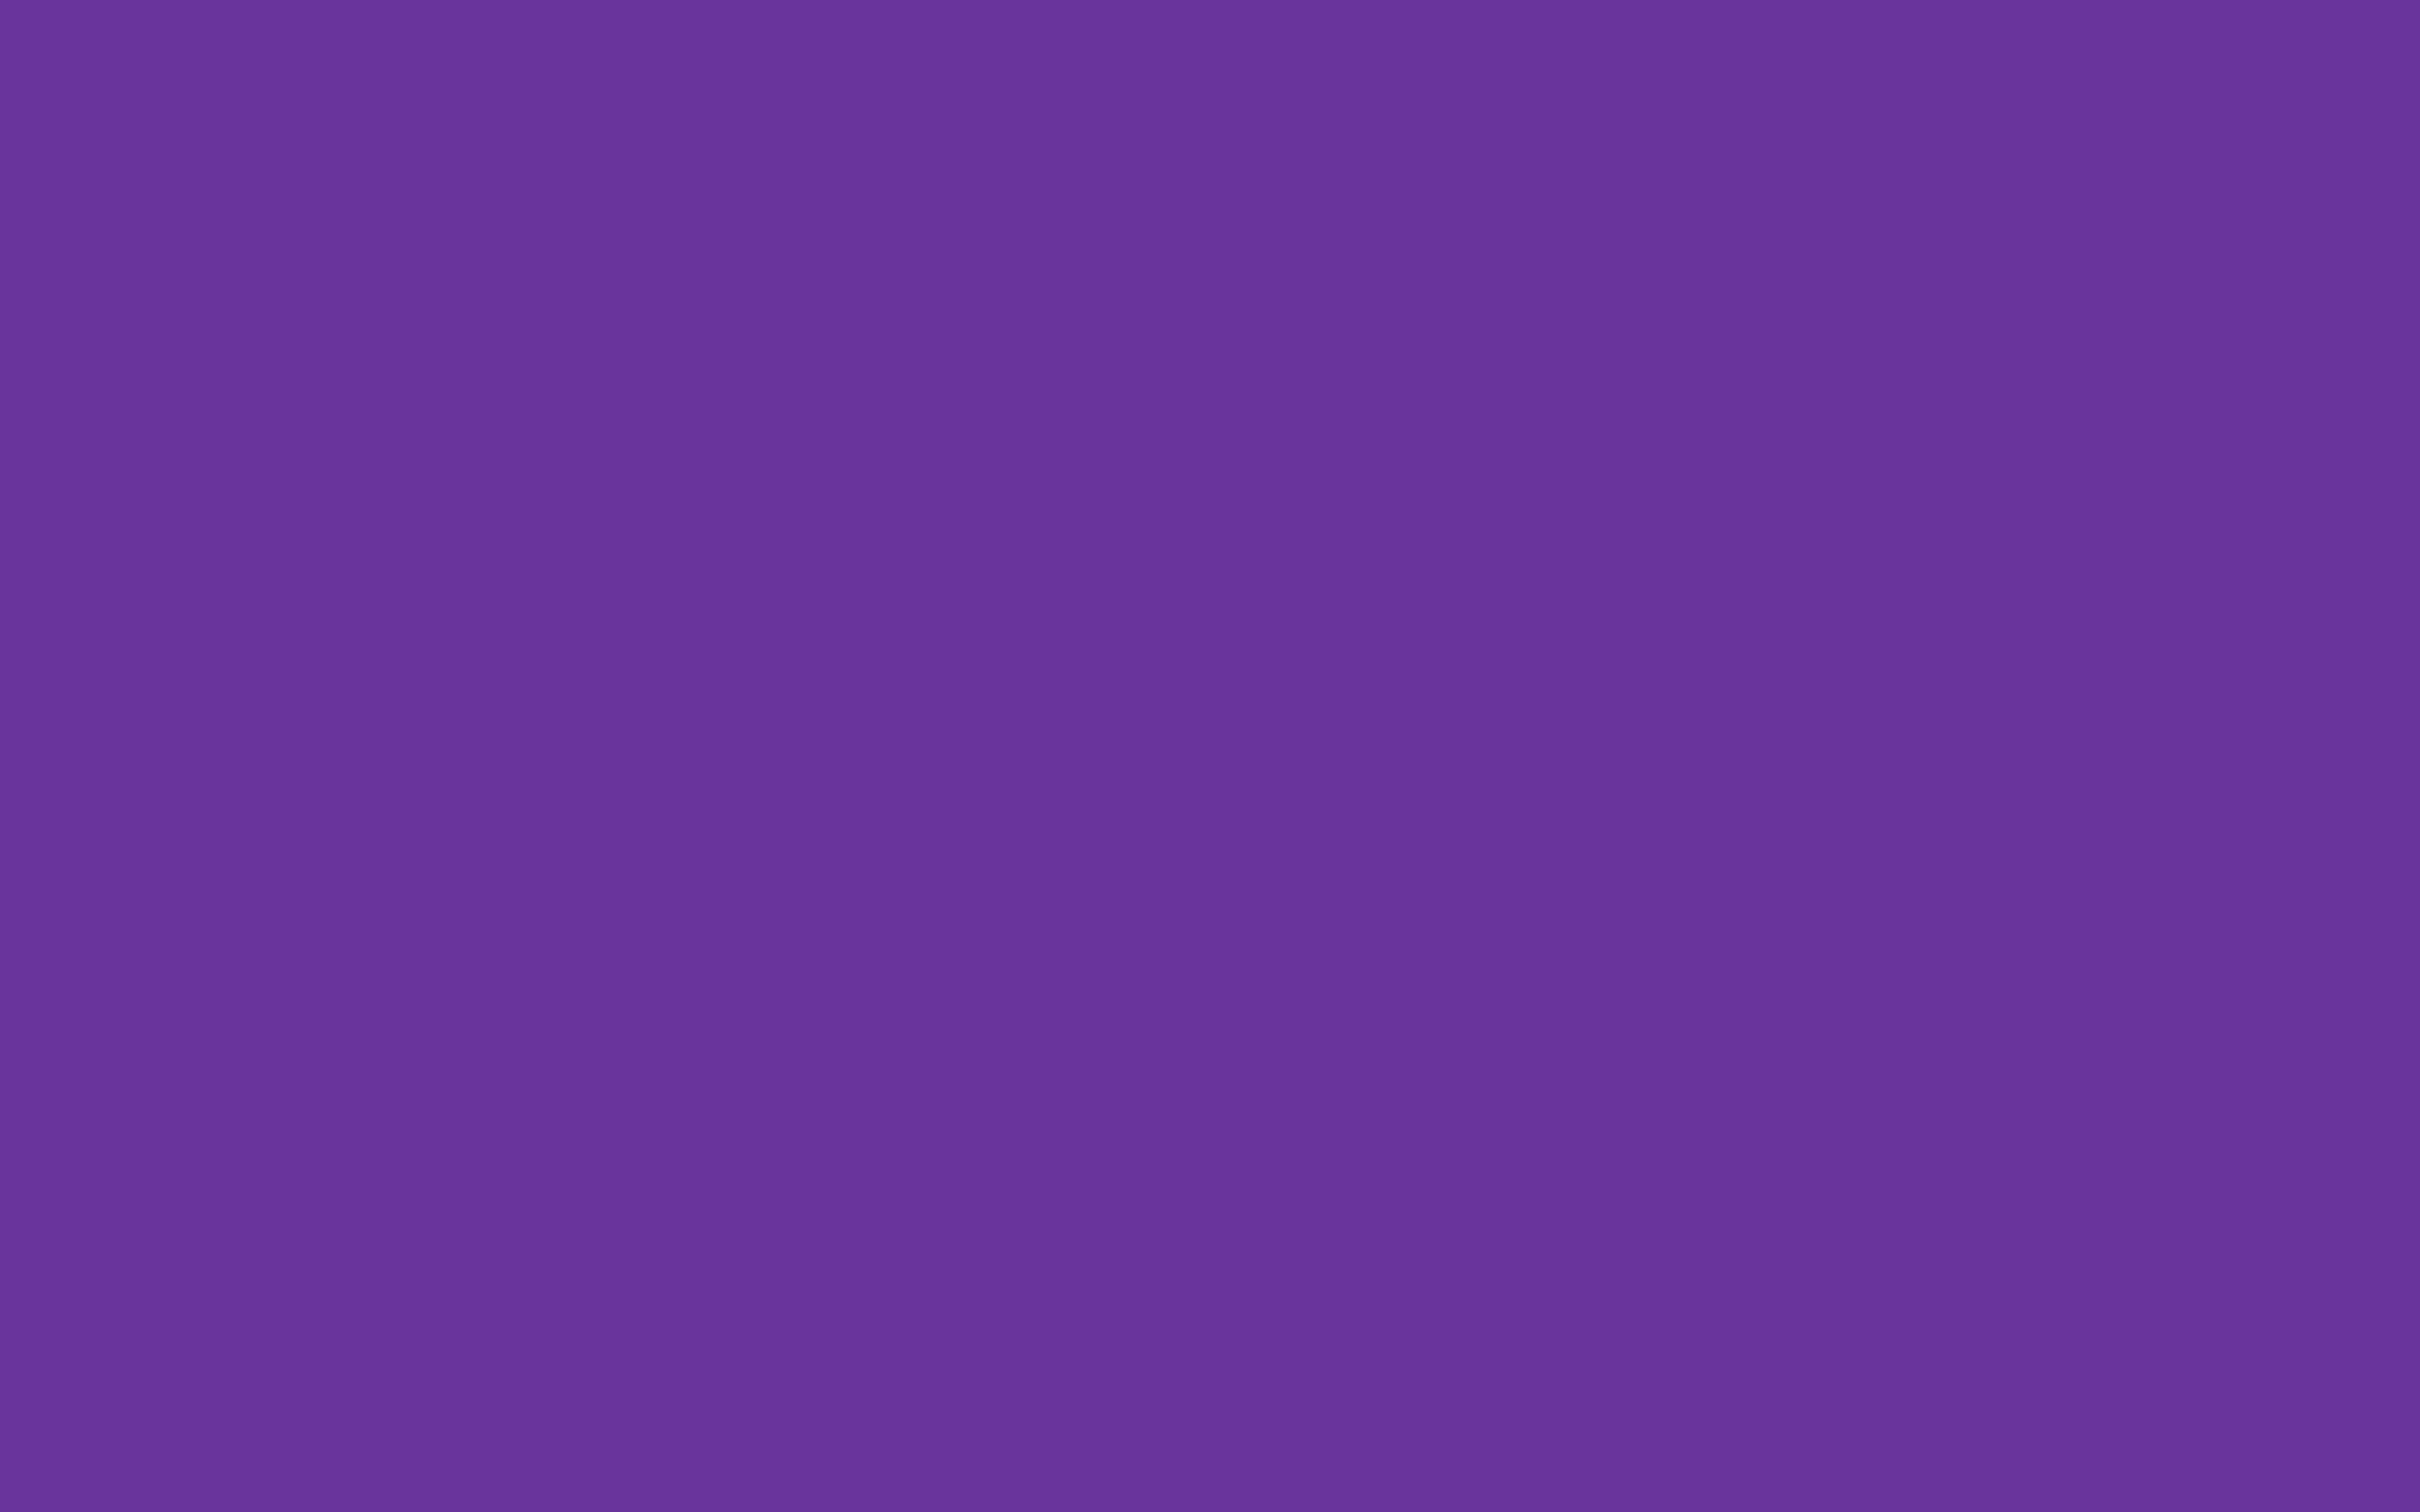 Nền màu tím đậm (2880x1800 Purple Heart Solid Color Background): Nếu bạn muốn trang trí cho desktop của mình với một tông màu đơn giản nhưng thật hiện đại, màu tím đậm là sự lựa chọn hoàn hảo. Trang web của chúng tôi cung cấp các hình nền tối giản với kích thước 2880x1800, giúp cho hình ảnh của bạn trông rất chất lượng. Thêm nữa, bạn có thể tải xuống với chất lượng cao, miễn phí từ trang web của chúng tôi.